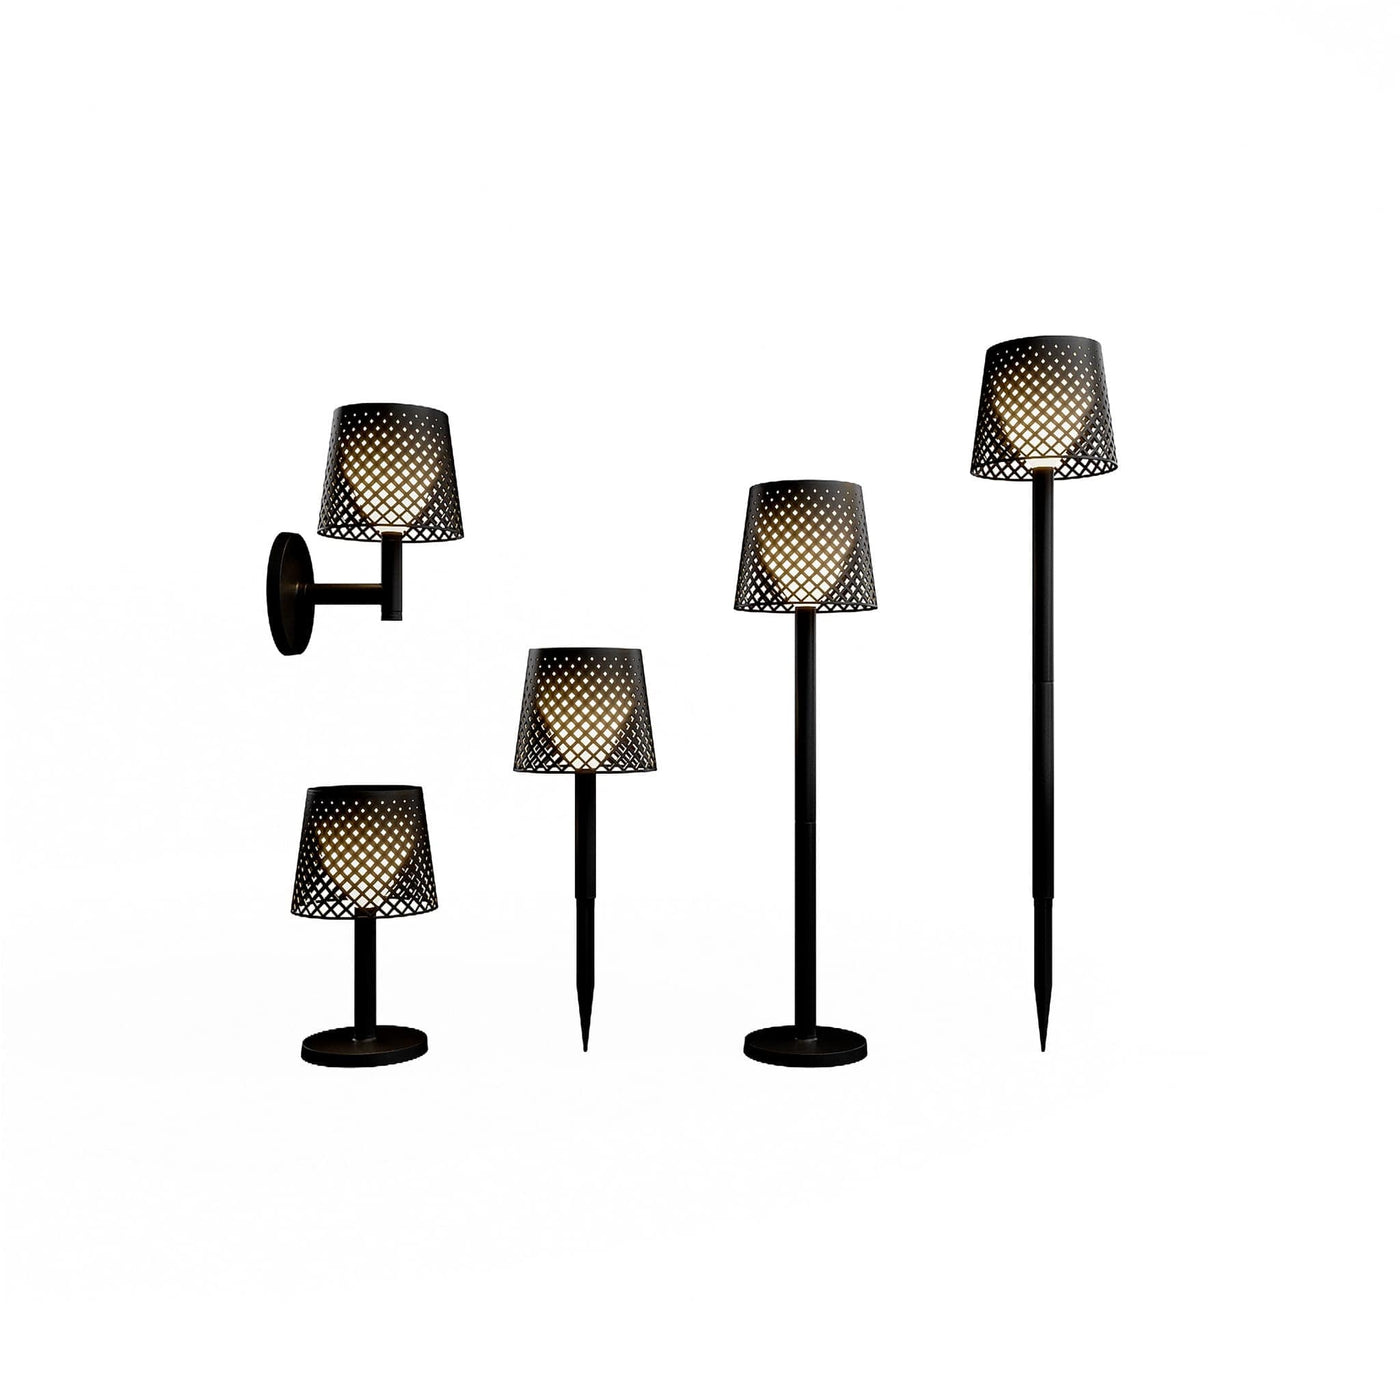 La lampe solaire Greta de Newgarden offre 5 options en 1 : lampe sur pied, lampe de table, deux piques de sol et lampe murale. Polyvalence et style pour votre jardin. Noir.